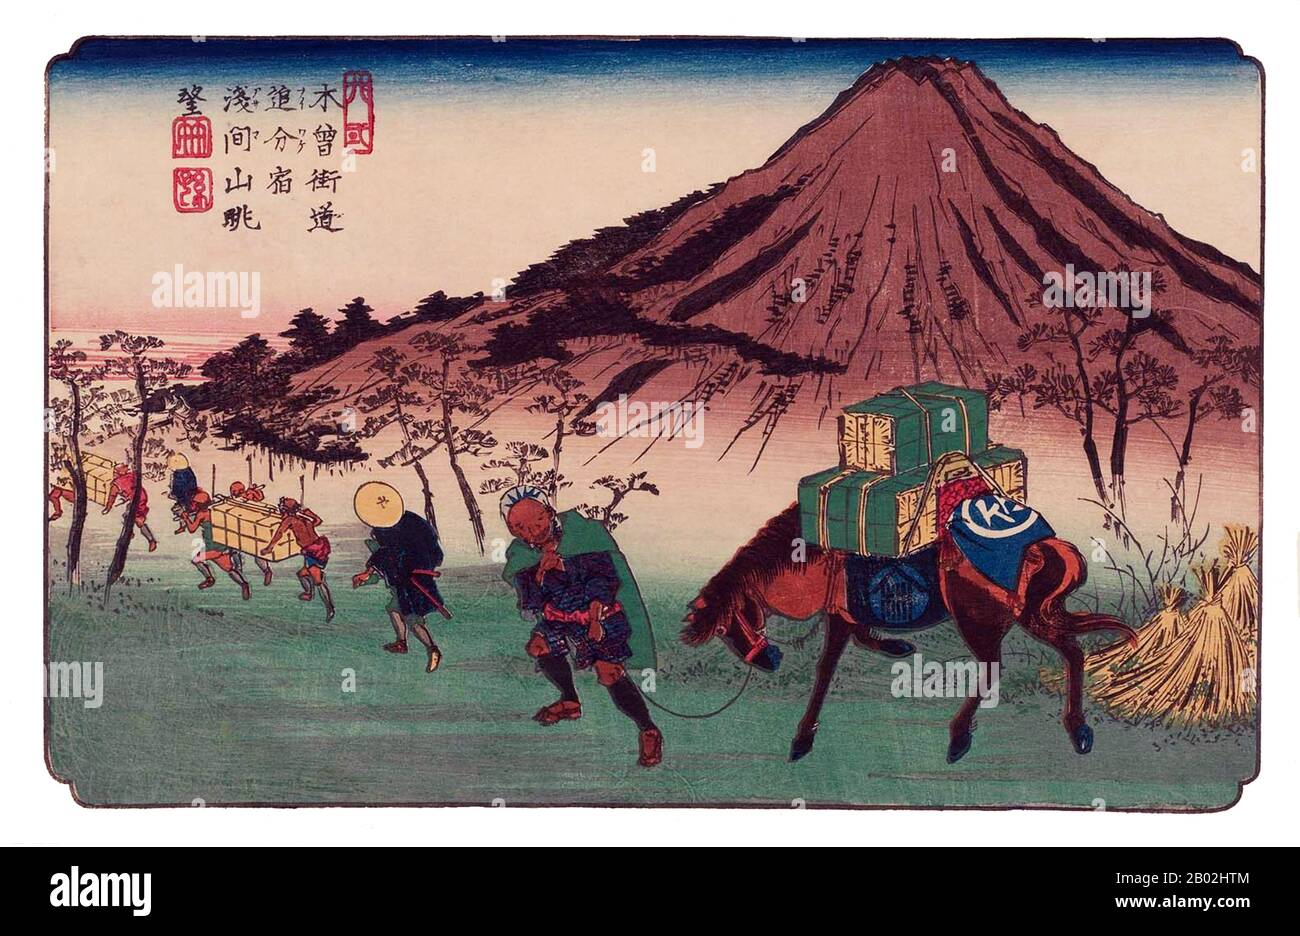 Les soixante-neuf stations de la route Kiso Kaidō (木曾街道六十九次 Kiso Kaidō Rokujūkyū-tsugi) ou soixante-neuf stations de la route Kiso, est une série d'œuvres ukiyo-e créées par Utagawa Hiroshige (1797-1858) et Keisai Eisen (1790-1848). Il y a 71 tirages au total dans la série (un pour chacune des 69 postes et Nihonbashi; Nakatsugawa-juku a deux tirages). Le nom commun pour le Kiso Kaidō est 'Nakasendō' ou 'Central Mountain Highway', donc cette série est aussi communément appelée les soixante-neuf stations du Nakasendō. Le Nakasendō était l'un des Cinq Itinéraires construits sous Tokugawa Ieyasu, A. Banque D'Images